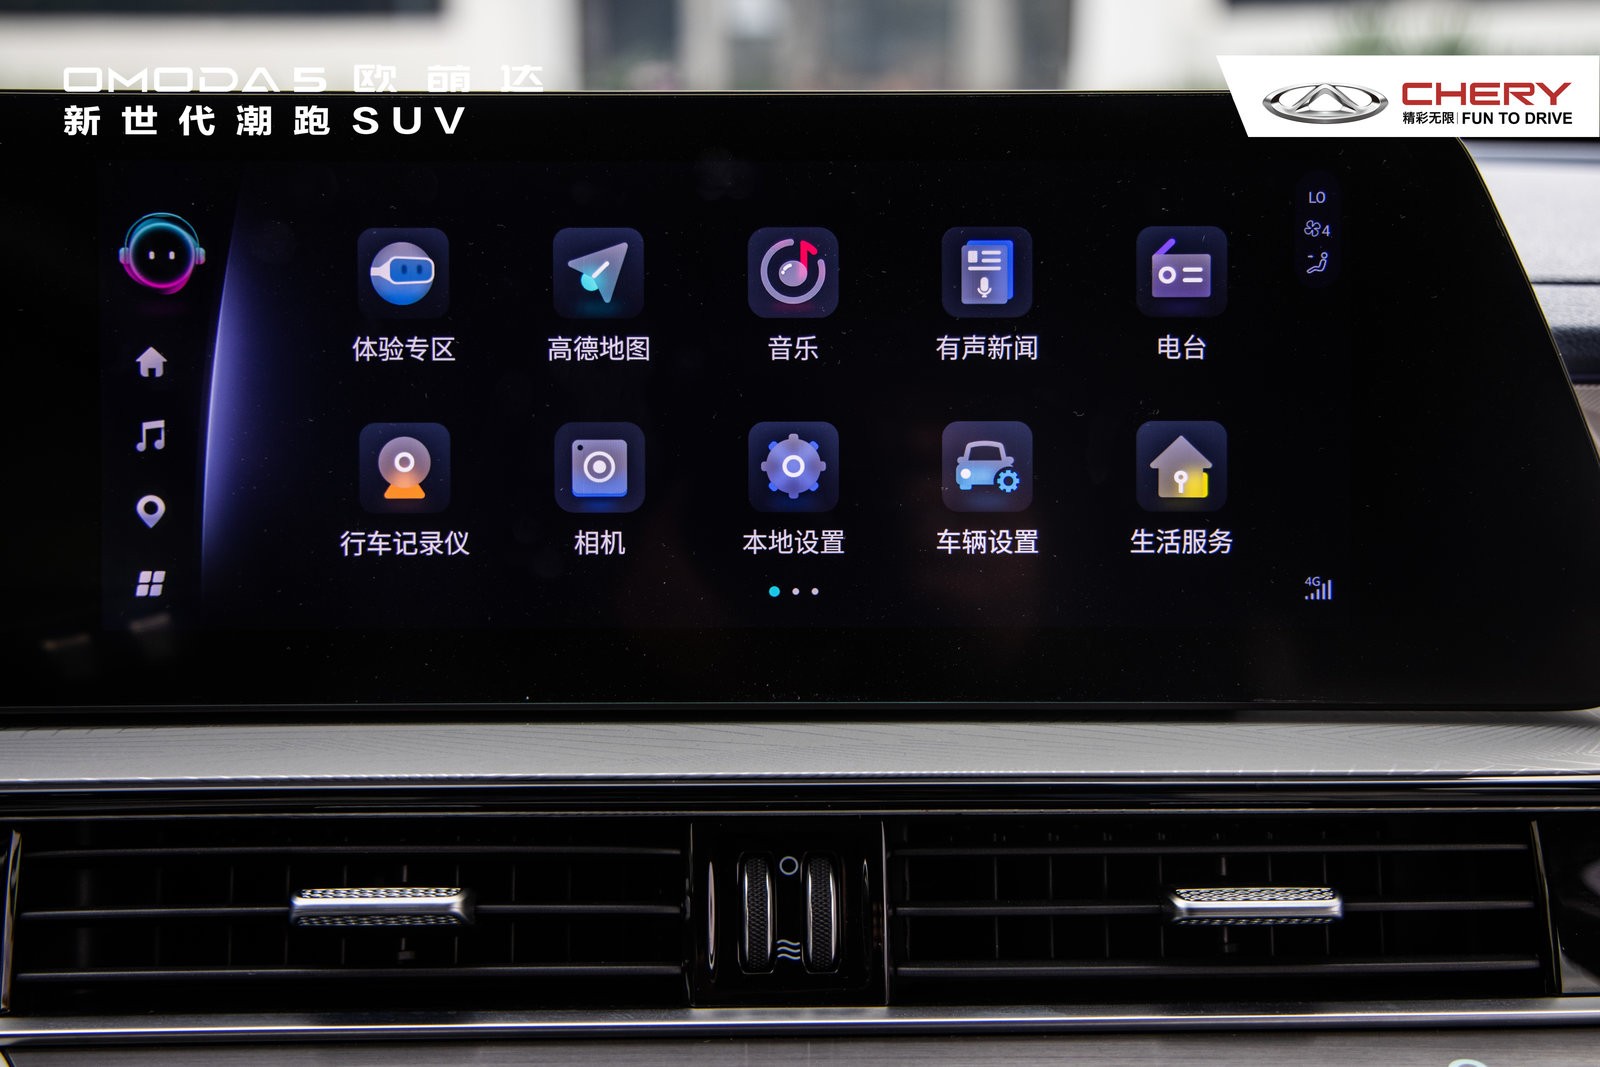 奇瑞SUV OMODA 5欧萌达「新世代潮玩之旅」桂林站媒体试驾完美落幕